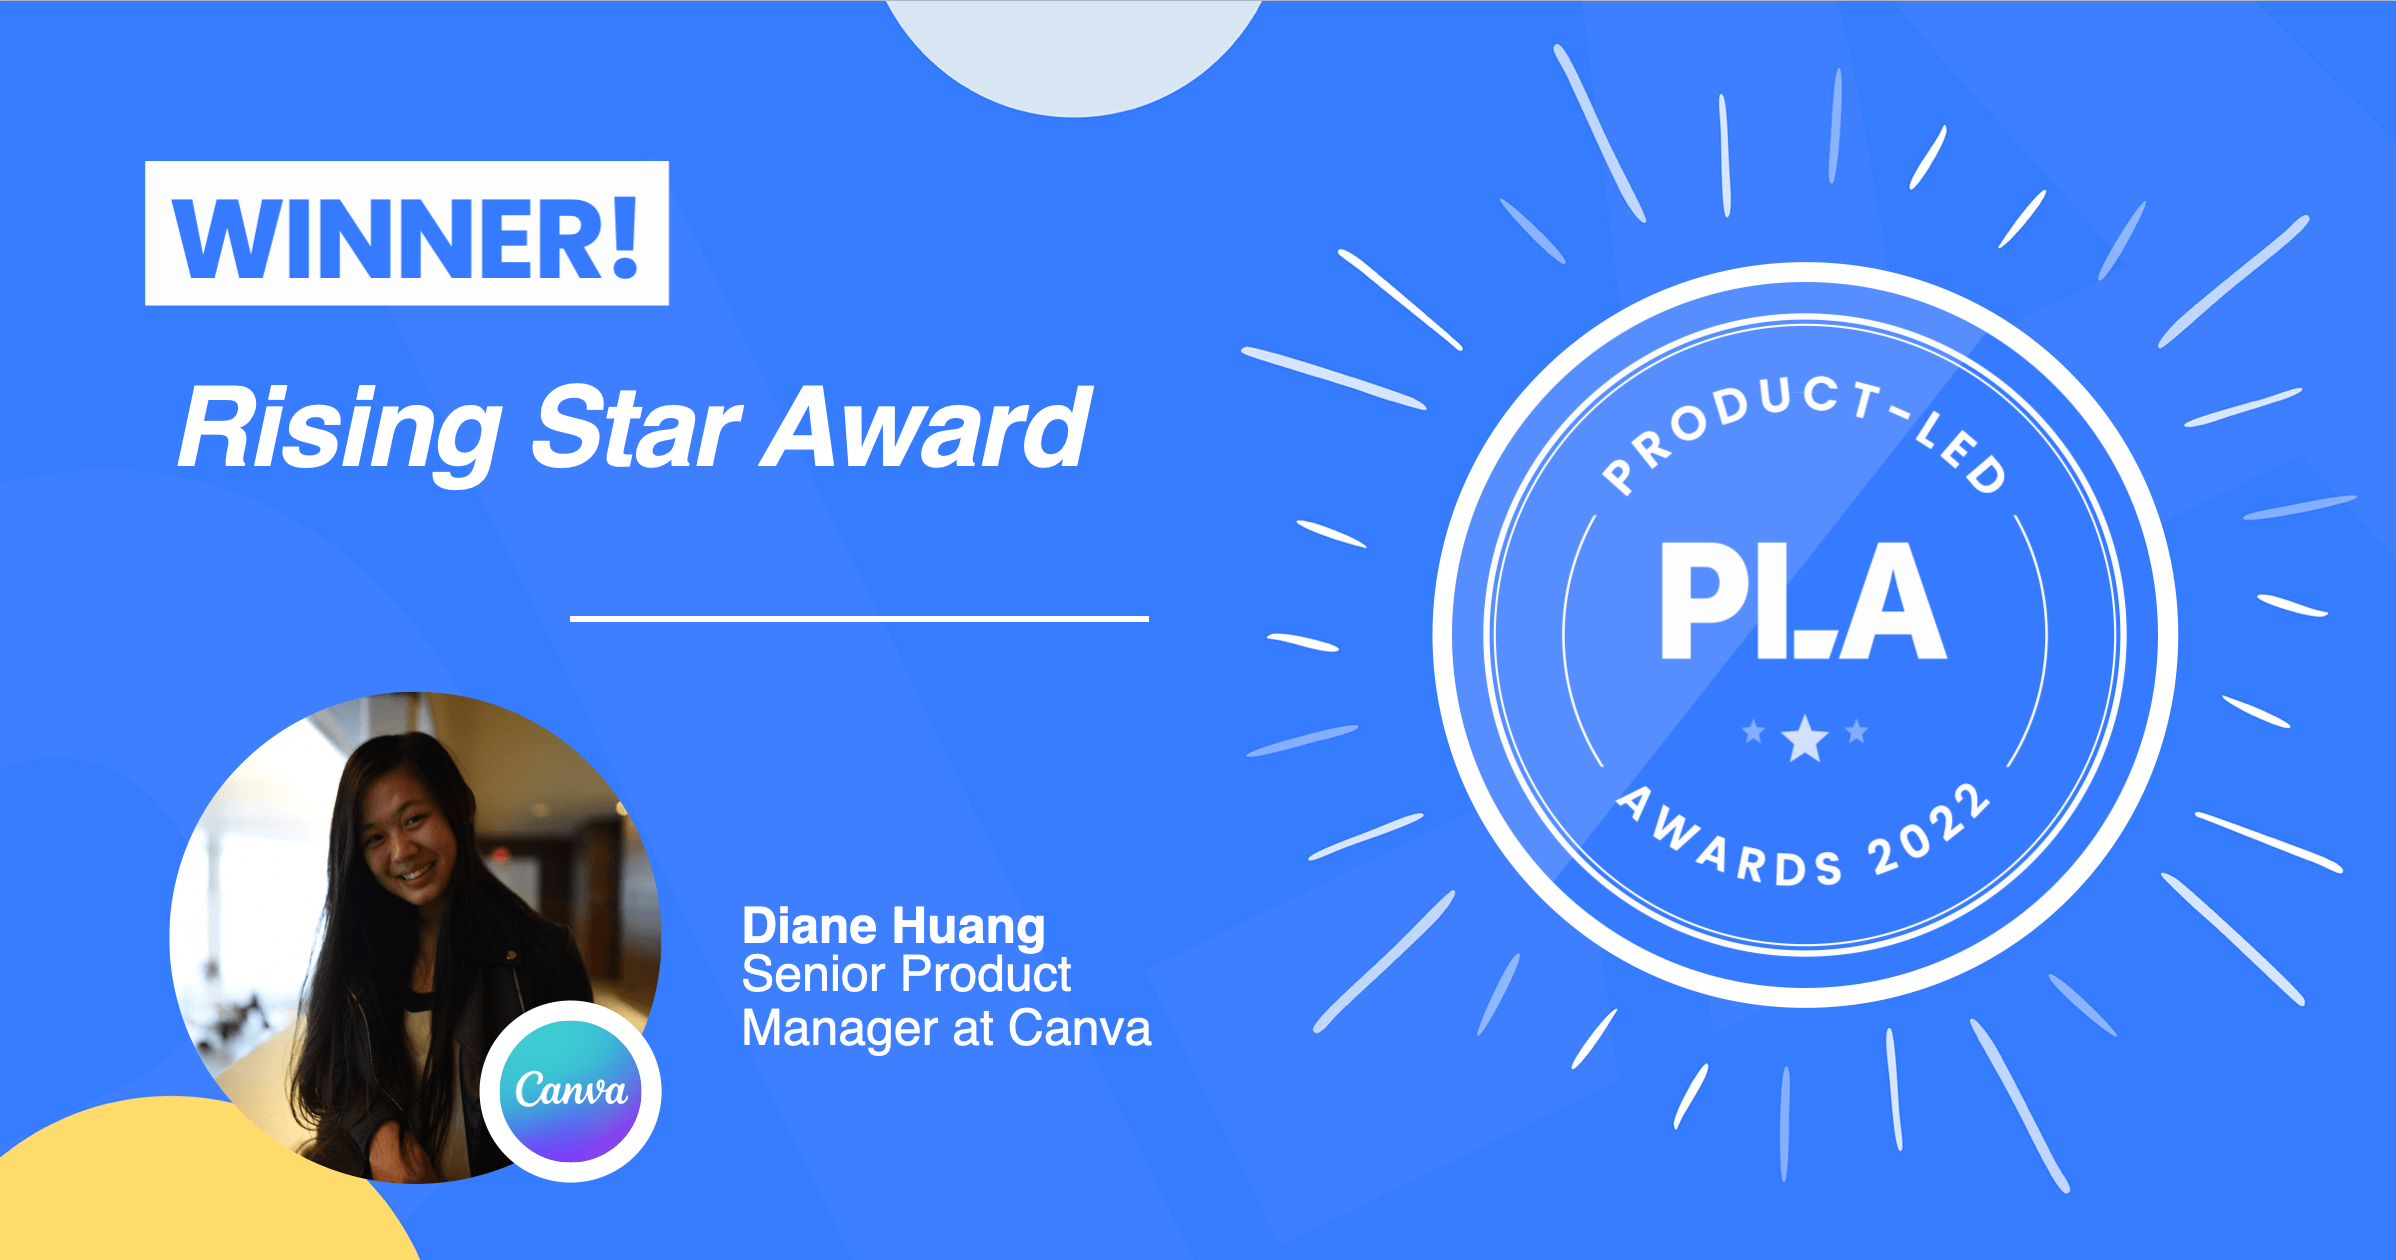 Rising Star Award Winner: Diane Huang, Senior Product Manager at Canva